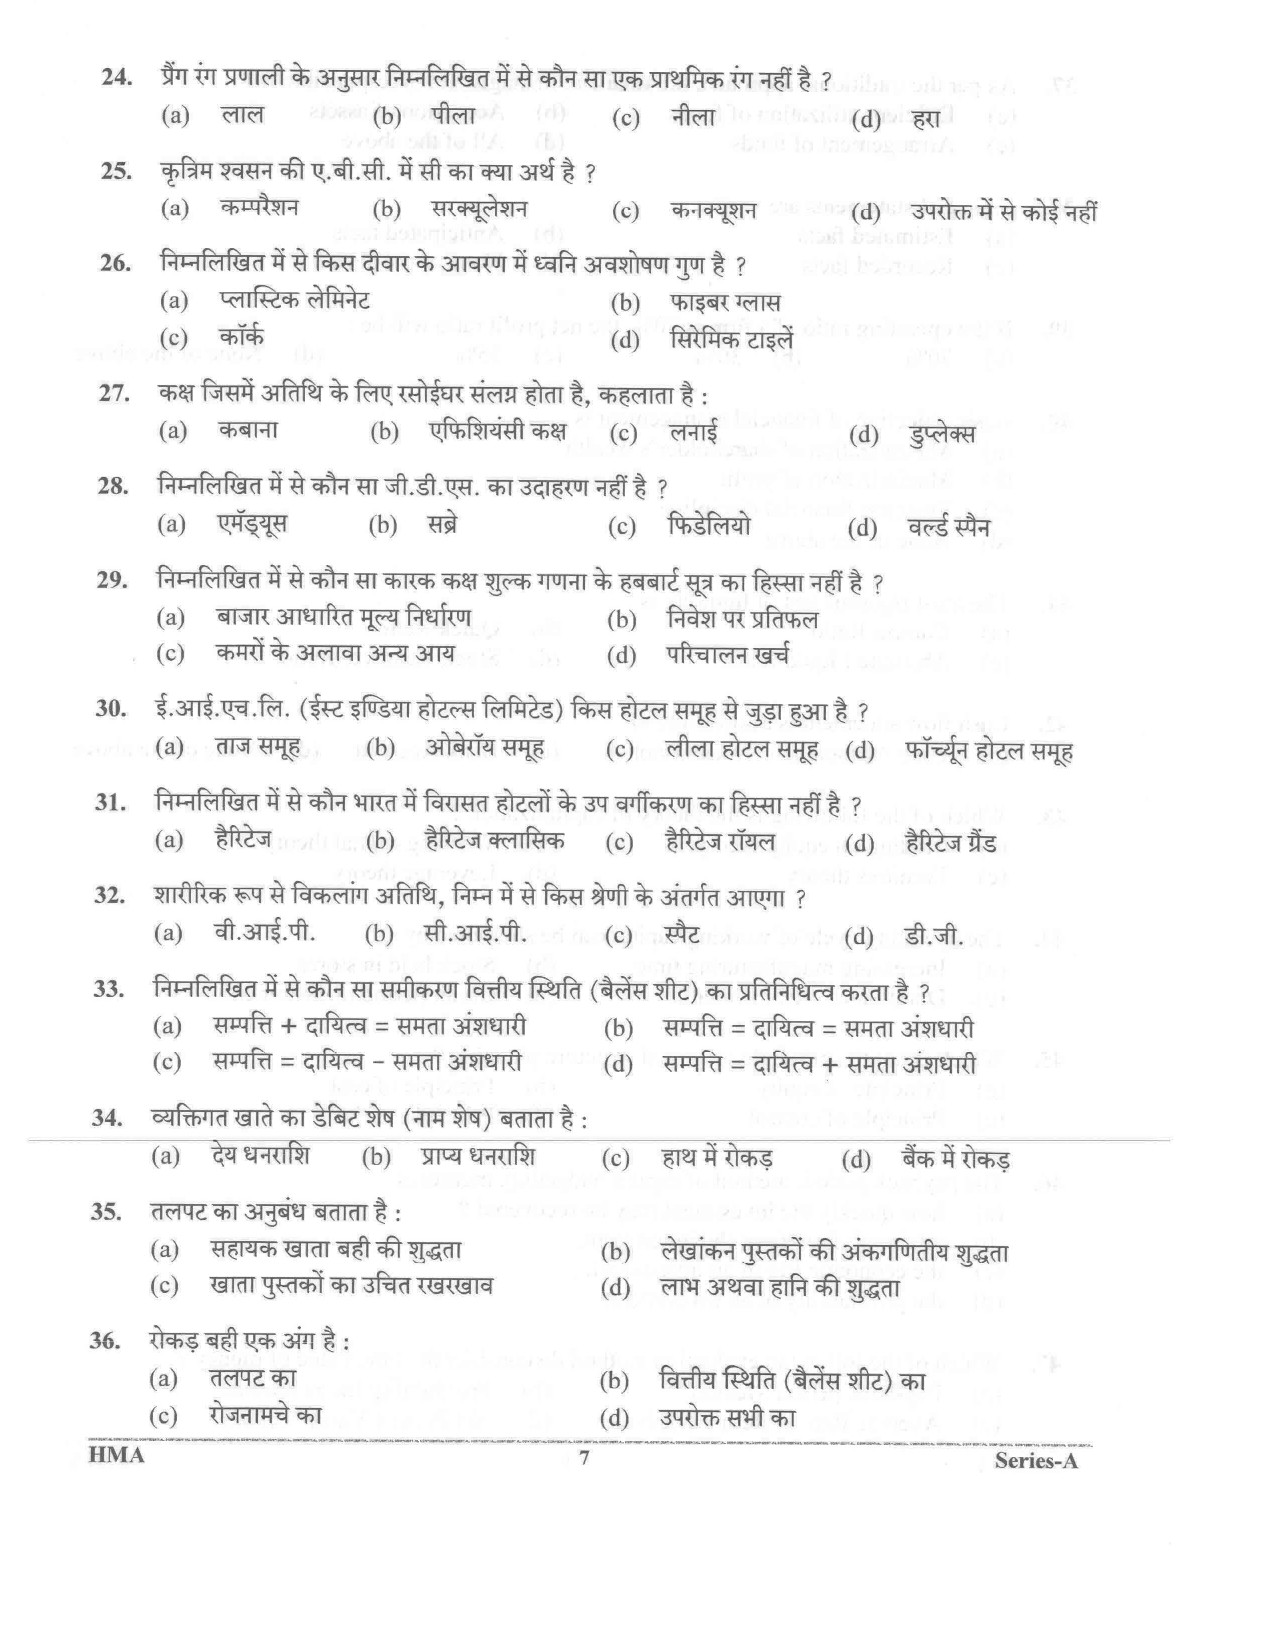 UKPSC Vyawasthapak Examination Question Paper 2021 6